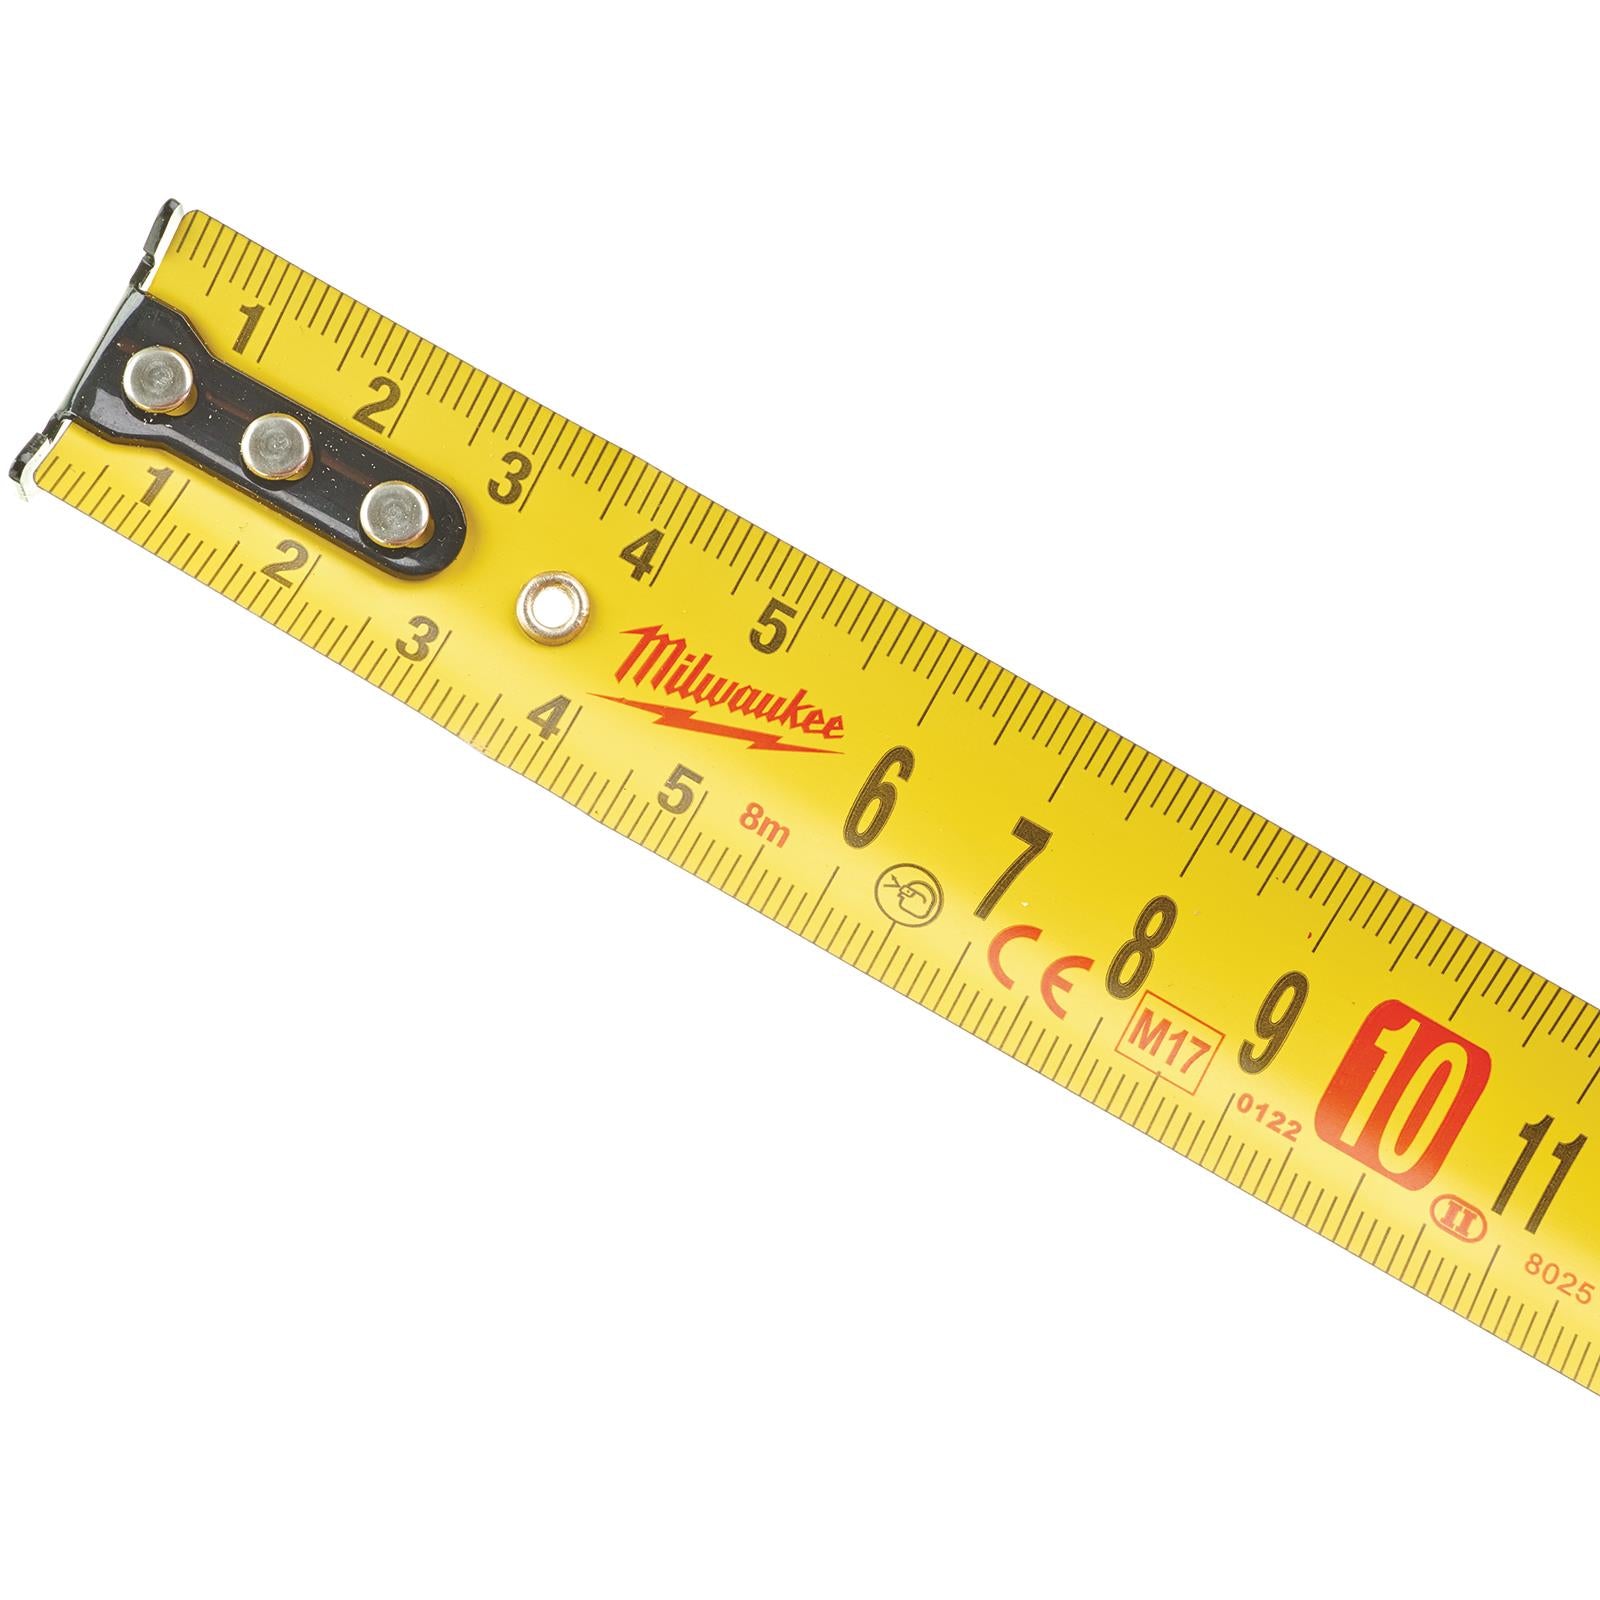 Milwaukee Tape Measure 8m Metric Slimline Pocket Tape 25mm Blade Width